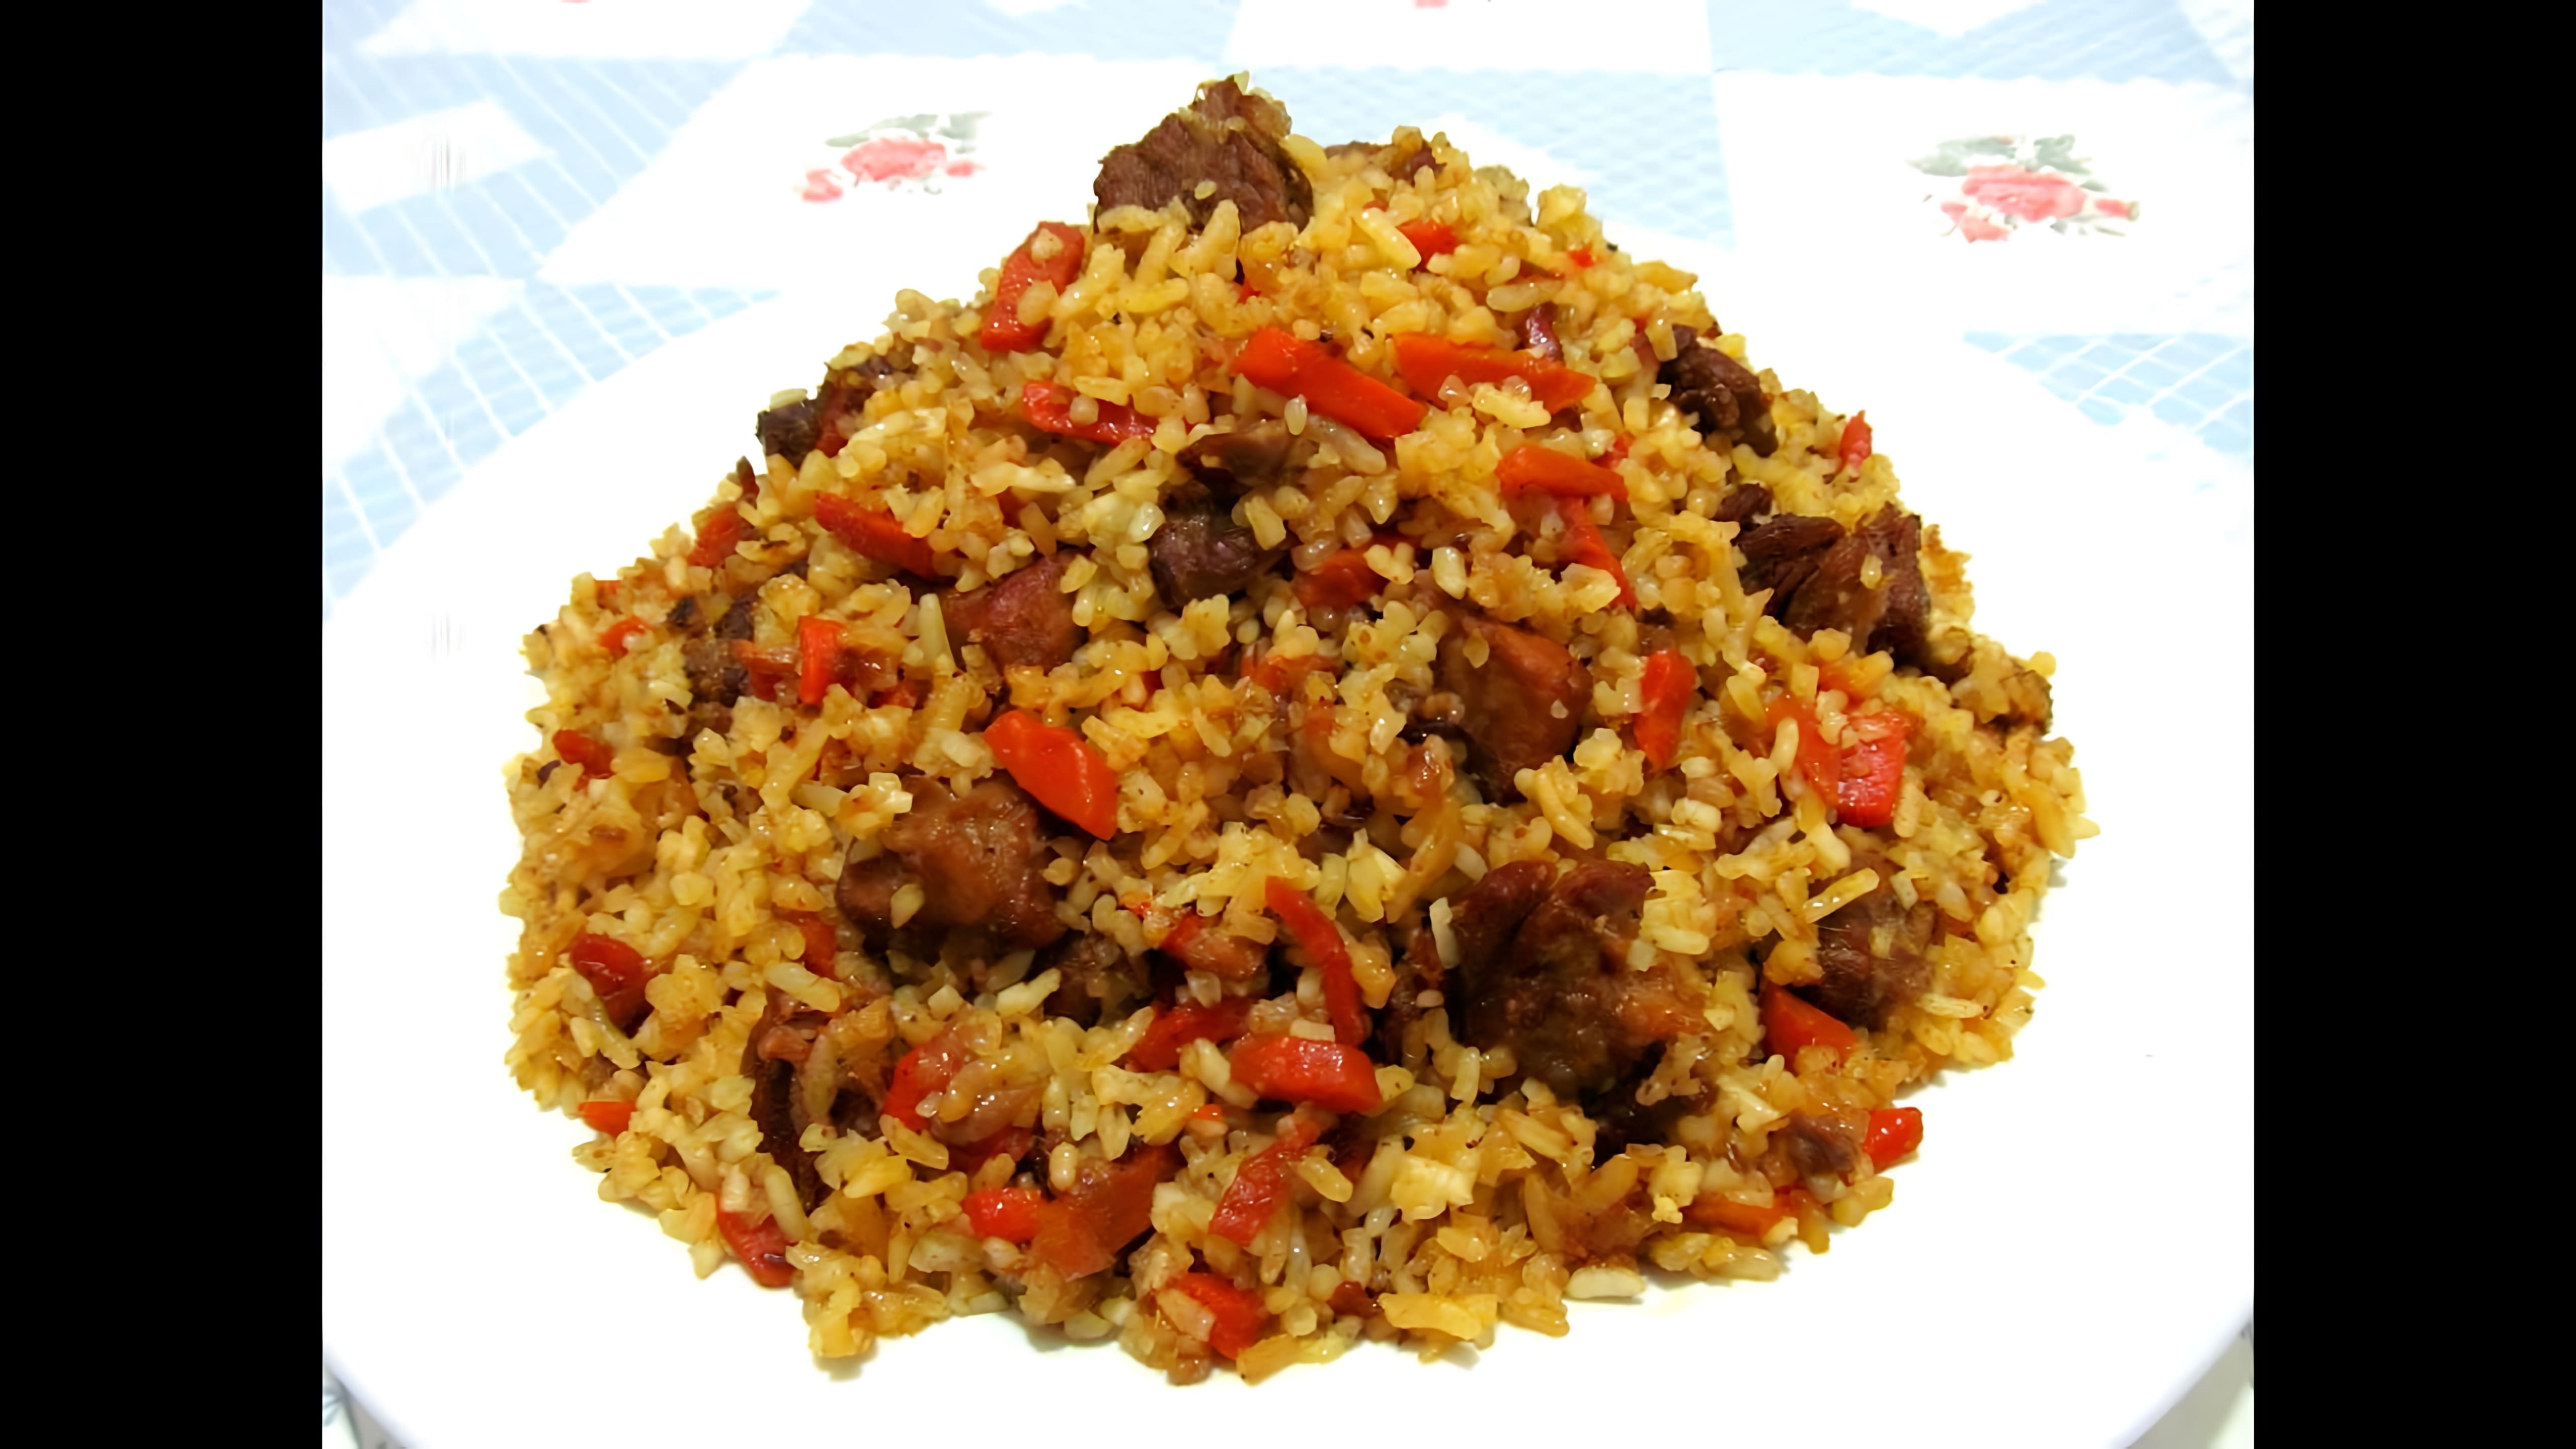 Видео рецепт домашнего плова, популярного рисового блюда из Центральной Азии